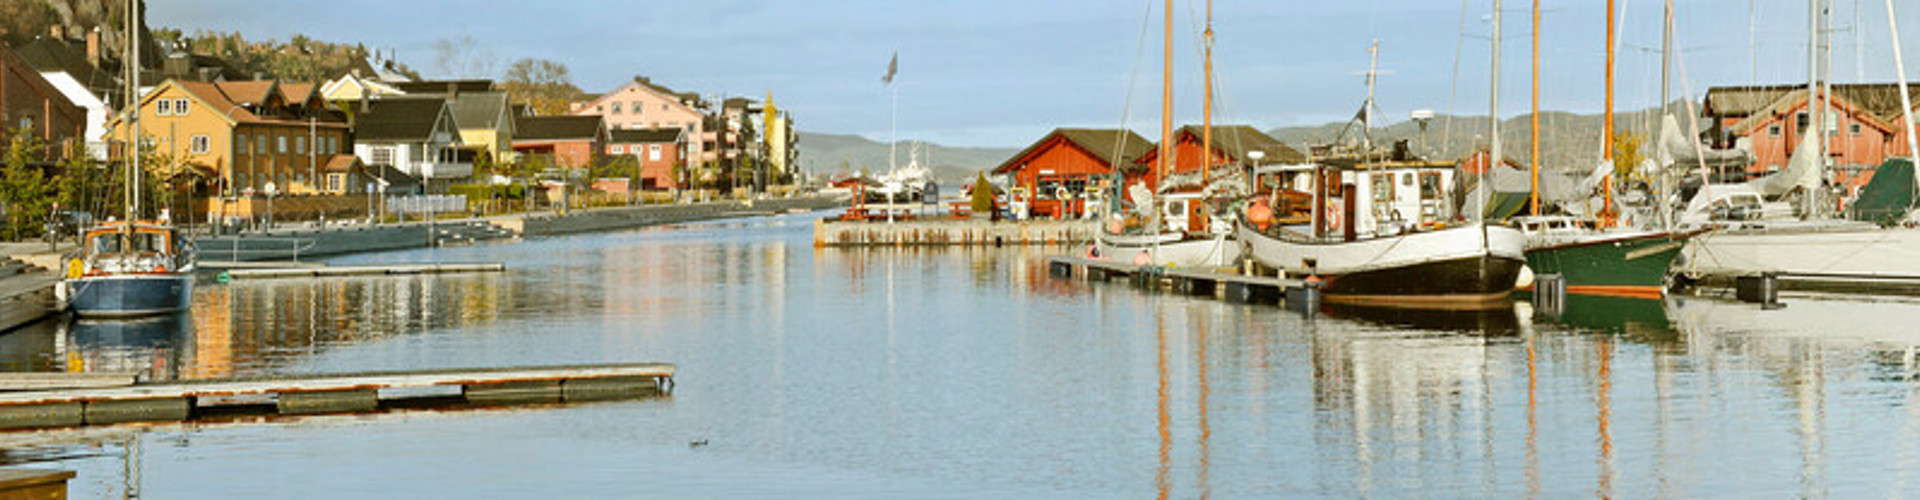 Holmestrand Sentrum Med Flott Båthavn Og Gjestebrygge 2